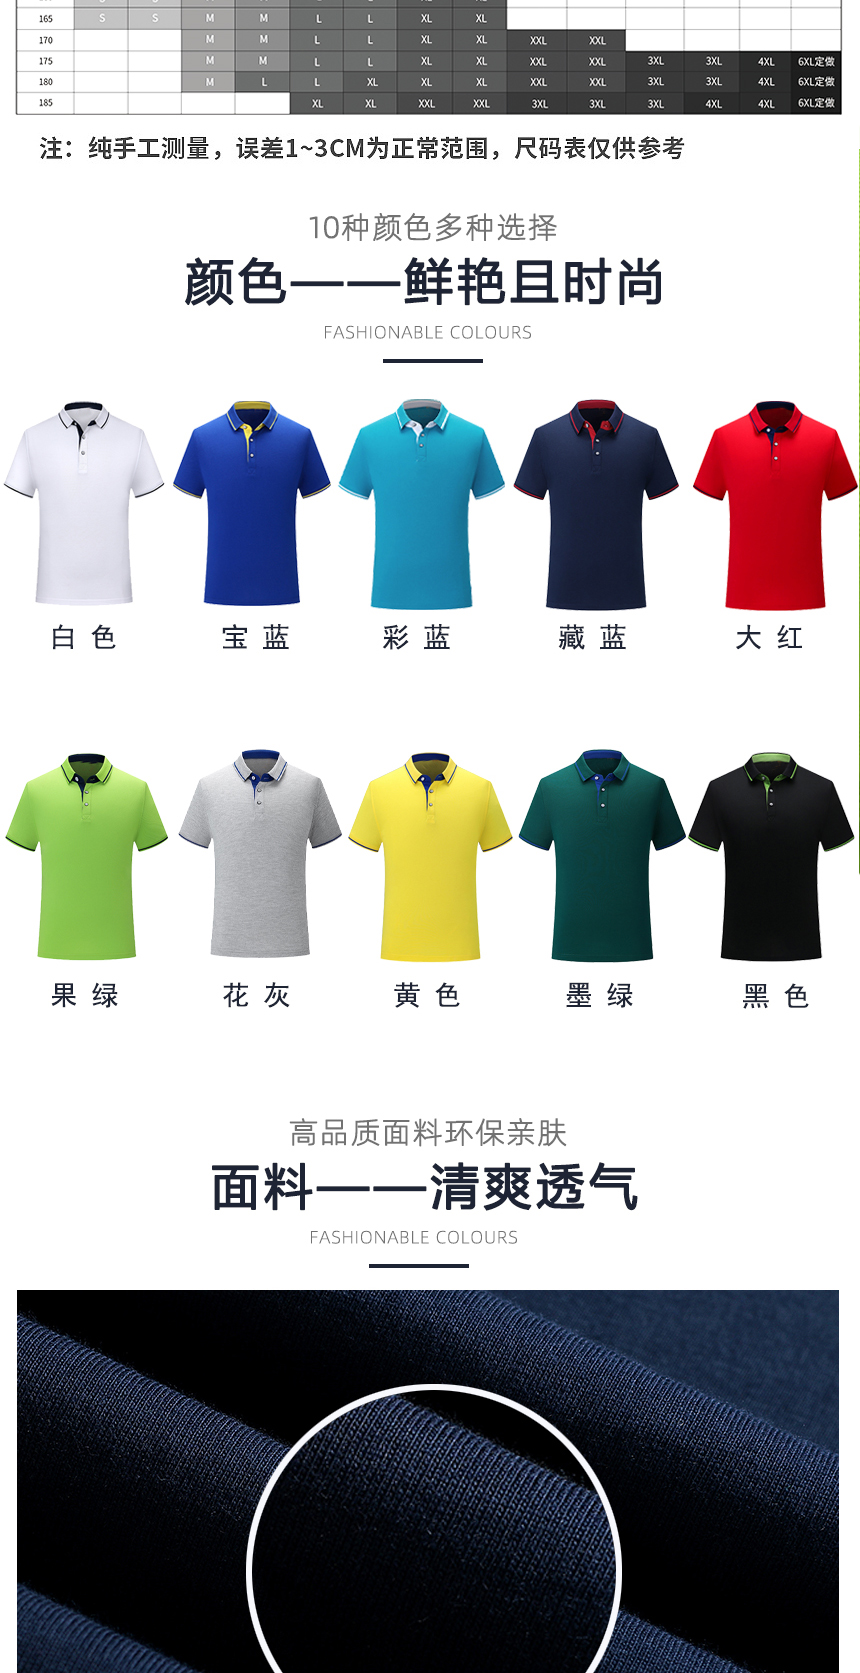 高档Polo衫同款不同颜色款式展示，高档Polo衫精选优质面料